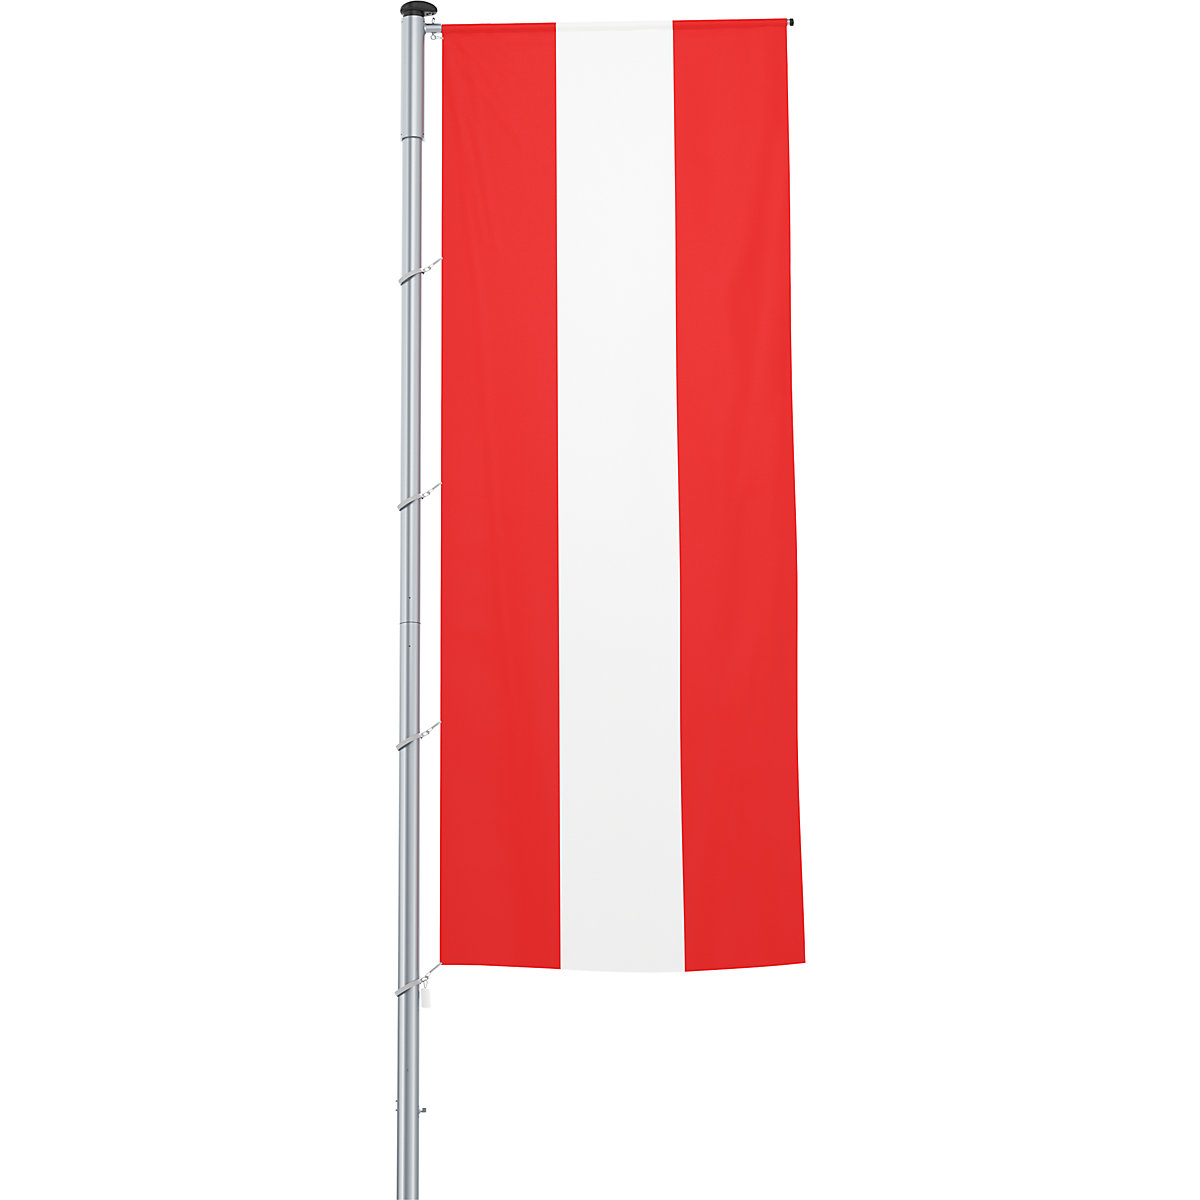 Gémes zászló/országzászló – Mannus, méret 1,2 x 3 m, Ausztria-20